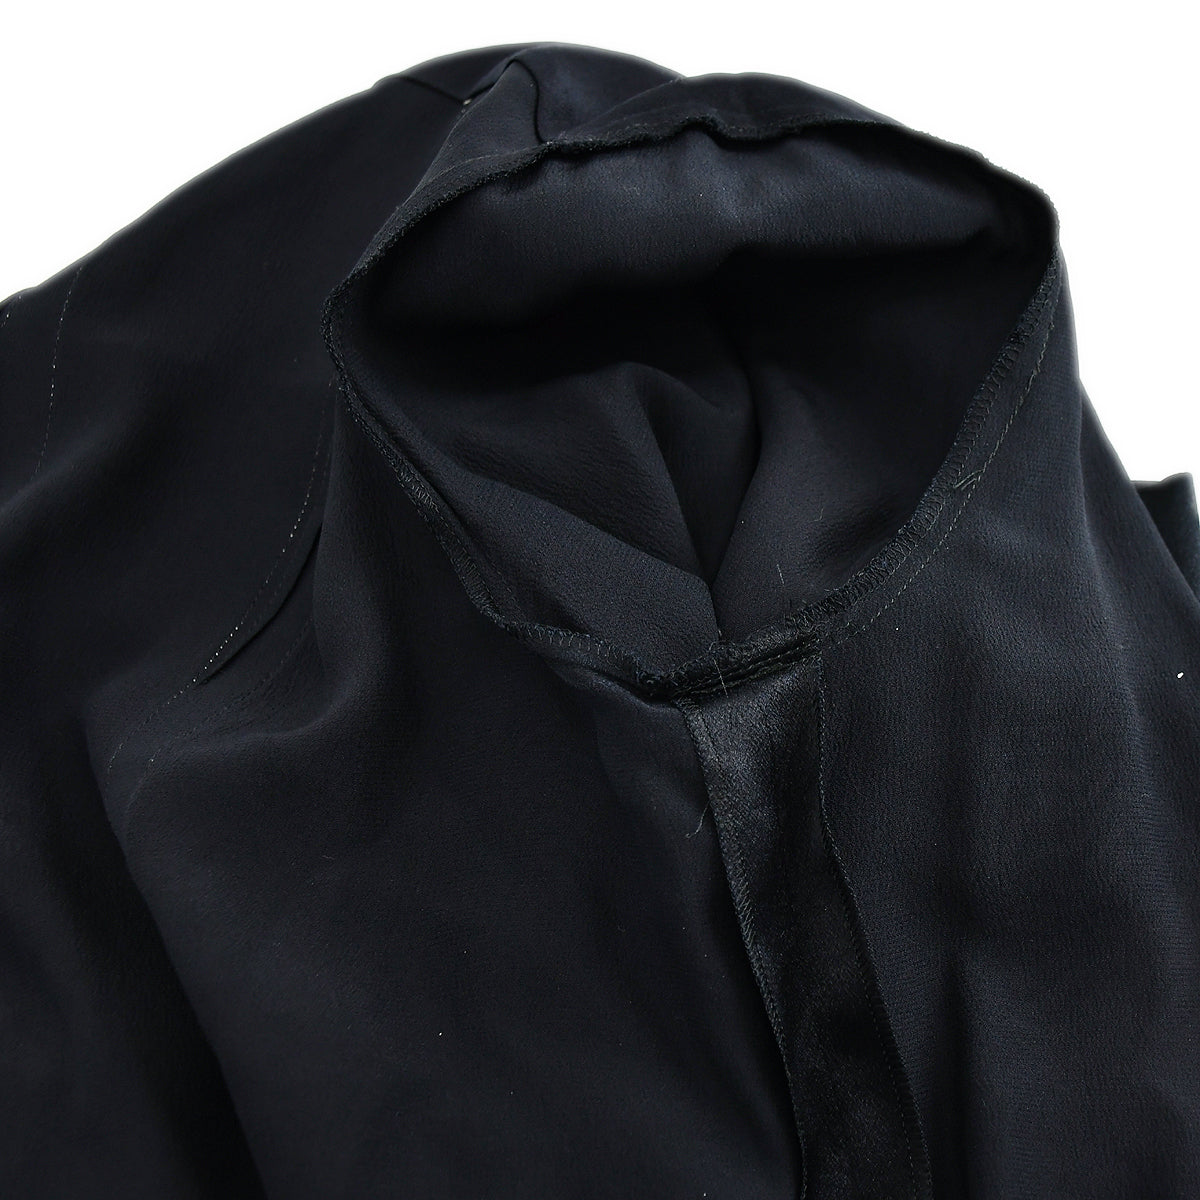 Chanel Blouse Shirt Black 94A 